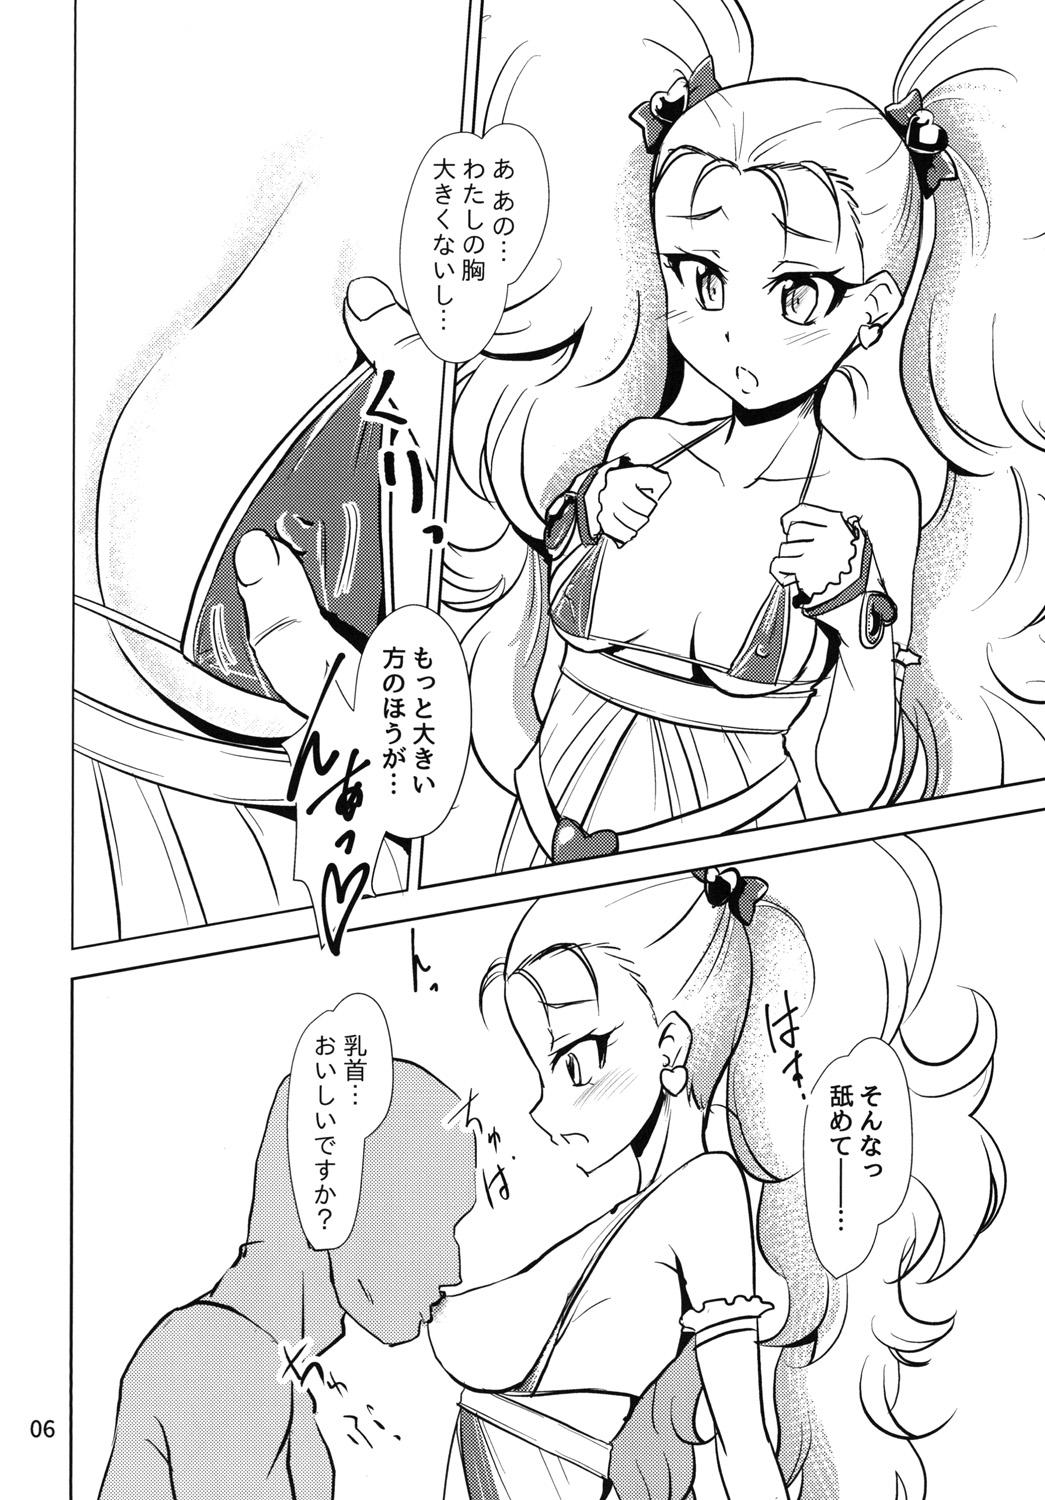 Ball Licking NamaCure - Kirakira precure a la mode Bribe - Page 6